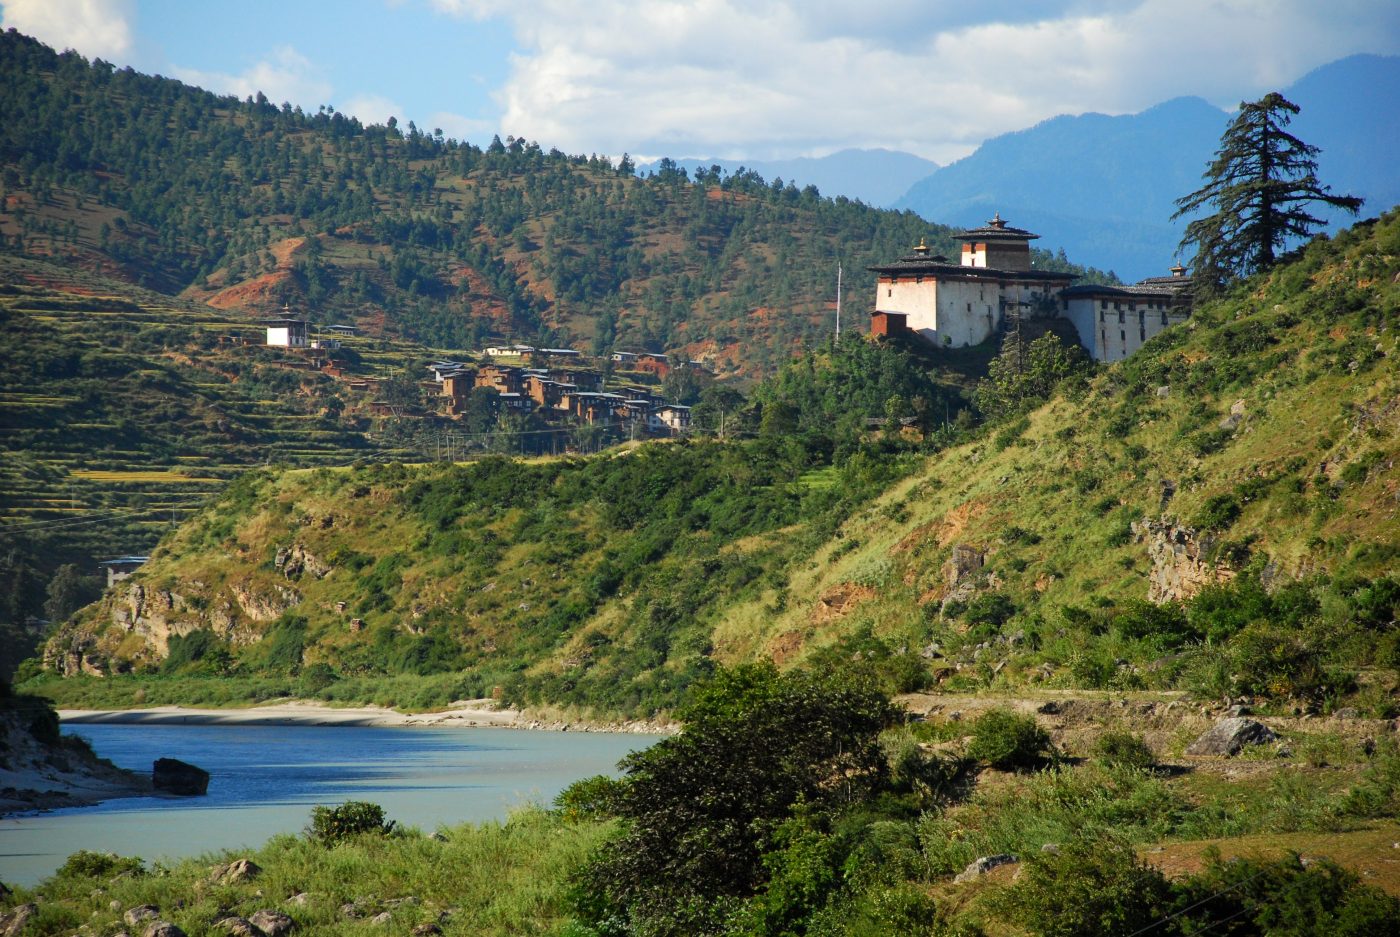 View of Wangdue, Bhutan